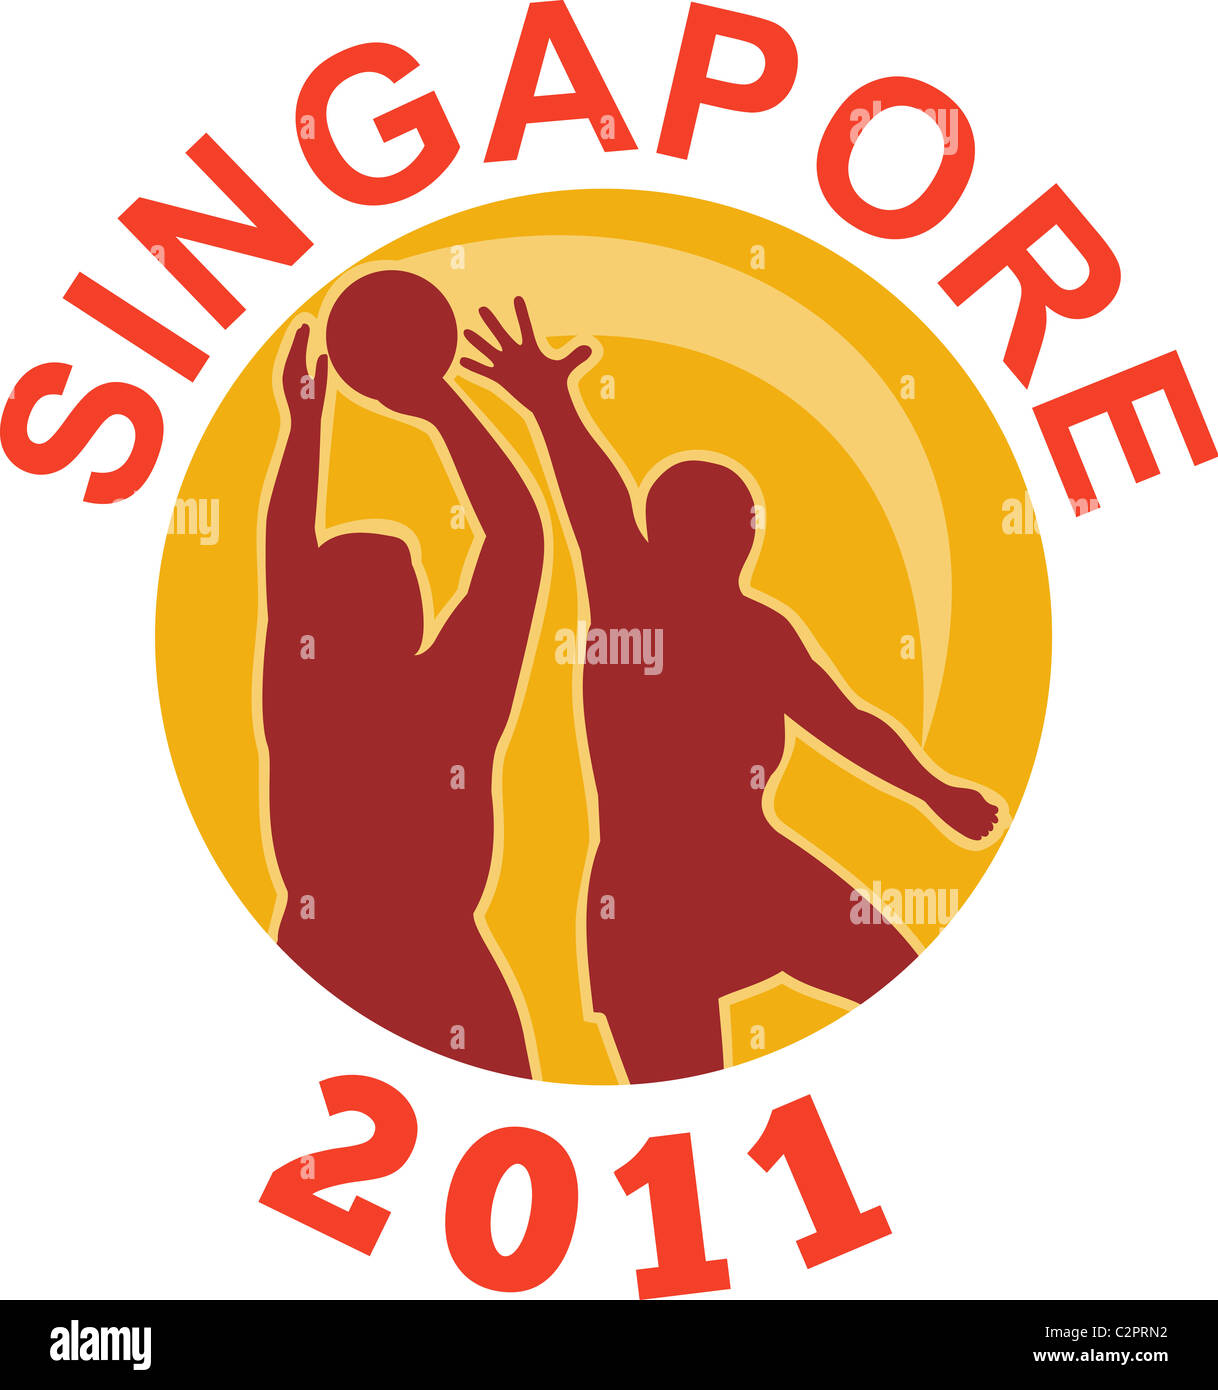 Abbildung eines Netball Spieler schießen Ball mit Kreis im Hintergrund und die Worte "Singapur 2011" Stockfoto